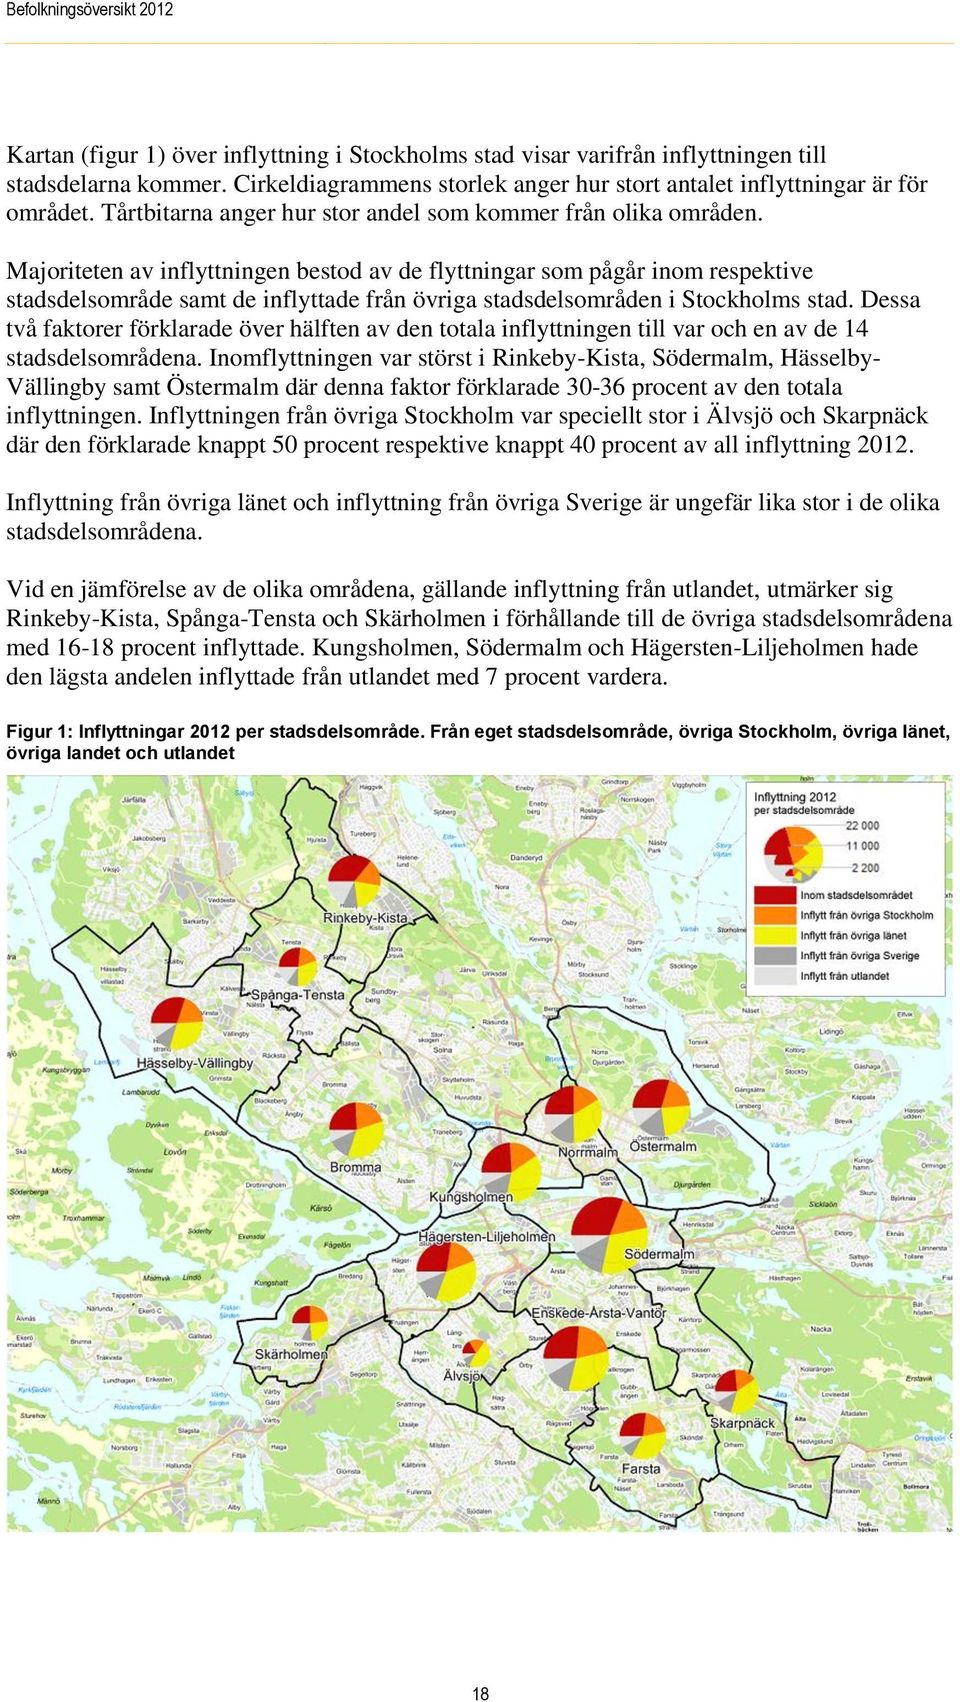 Majoriteten av inflyttningen bestod av de flyttningar som pågår inom respektive stadsdelsområde samt de inflyttade från övriga stadsdelsområden i Stockholms stad.